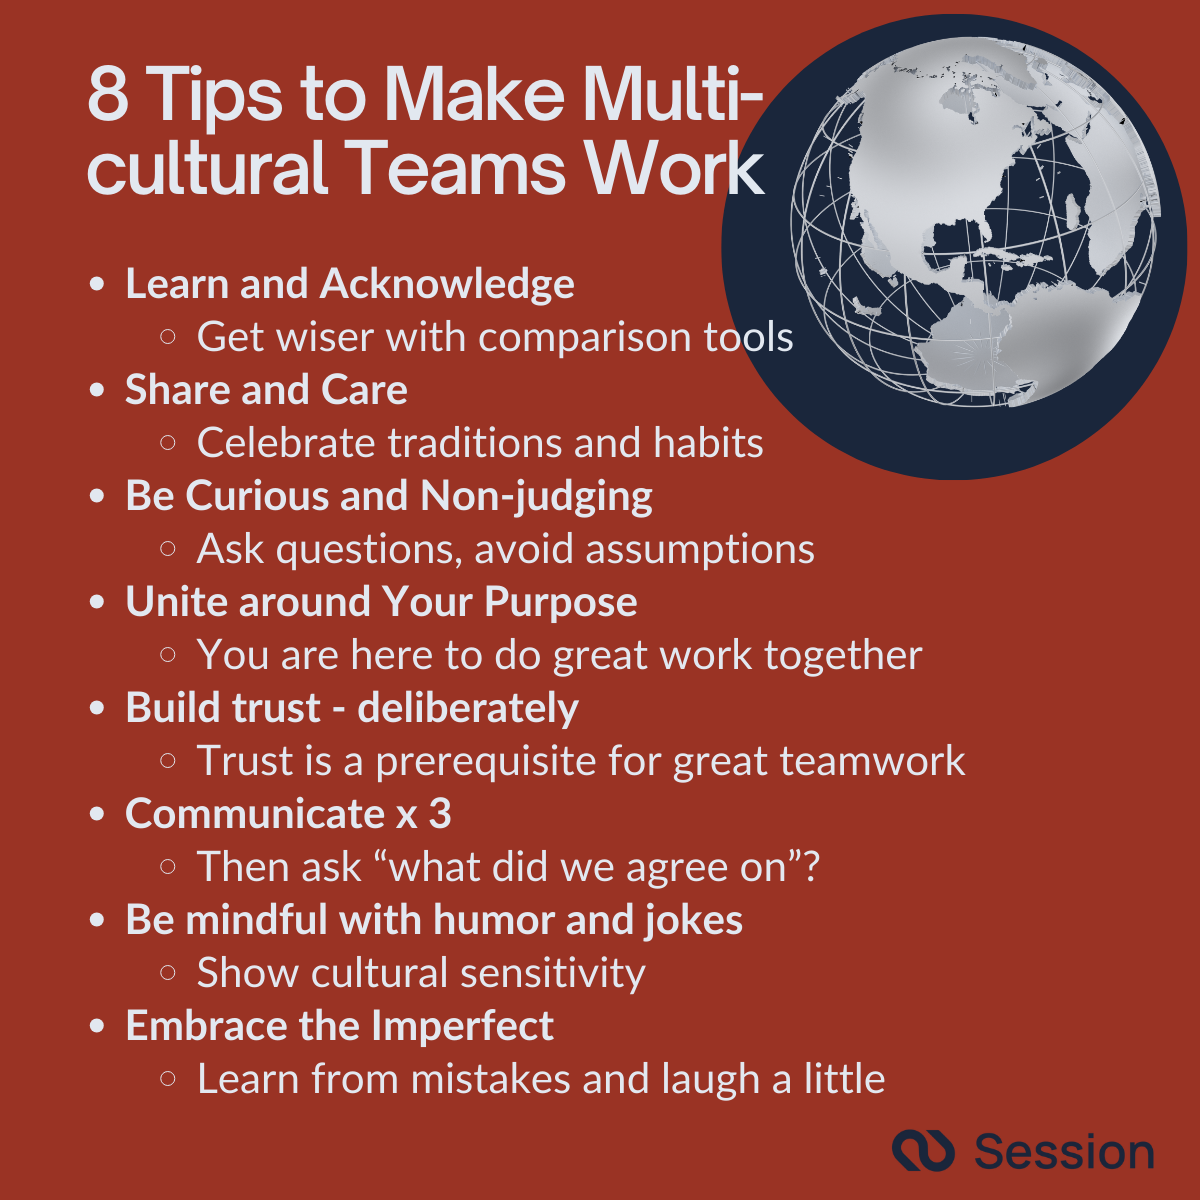 Illustration depicting 8 Tips that Make Multicultural Teams Work